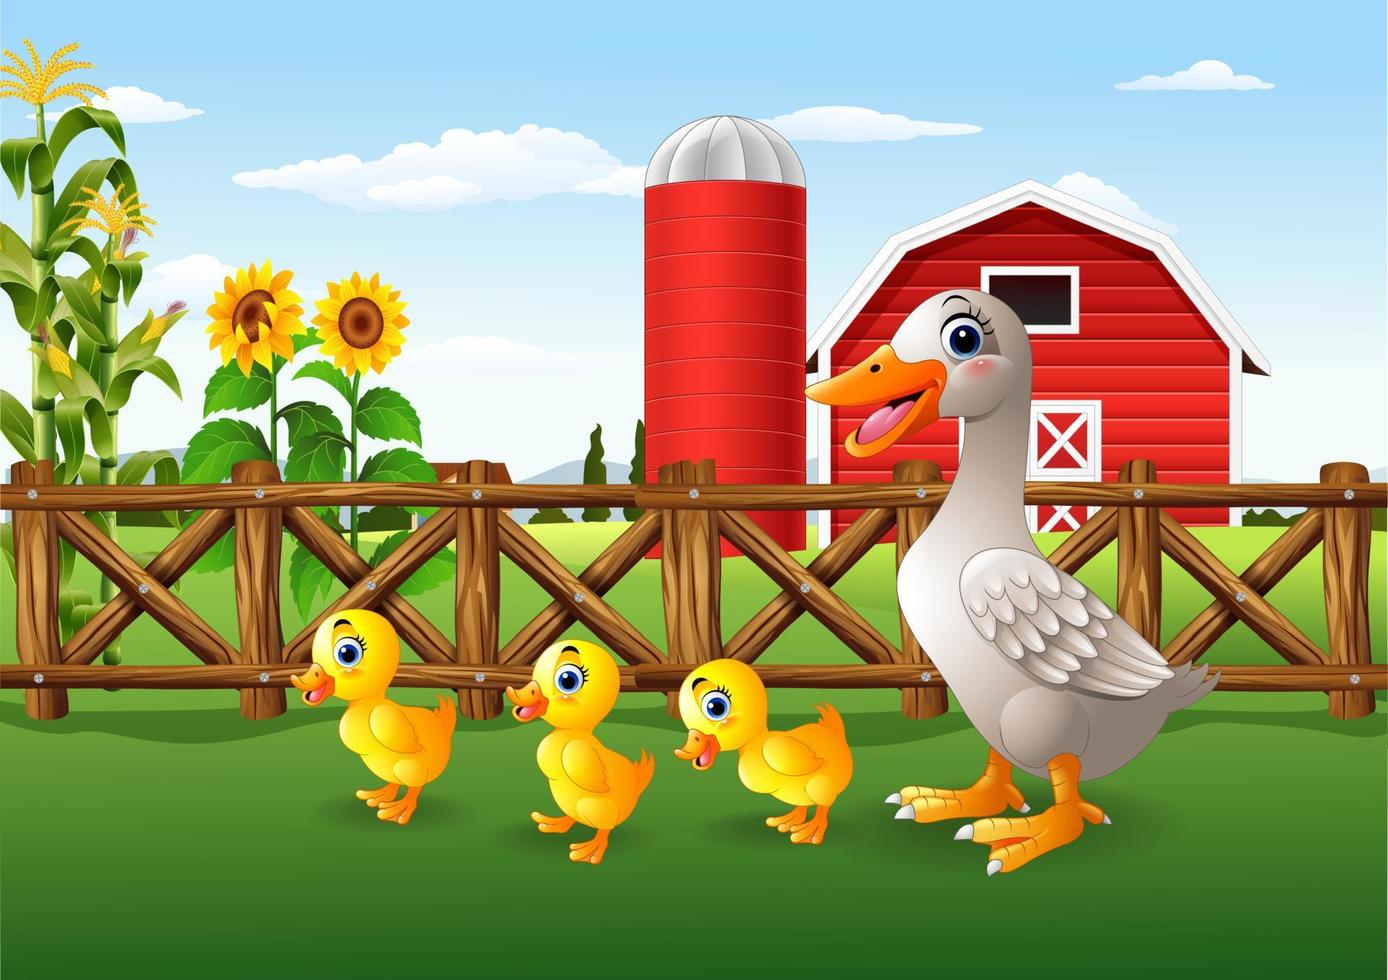 Cartoon duck family in the farm vector